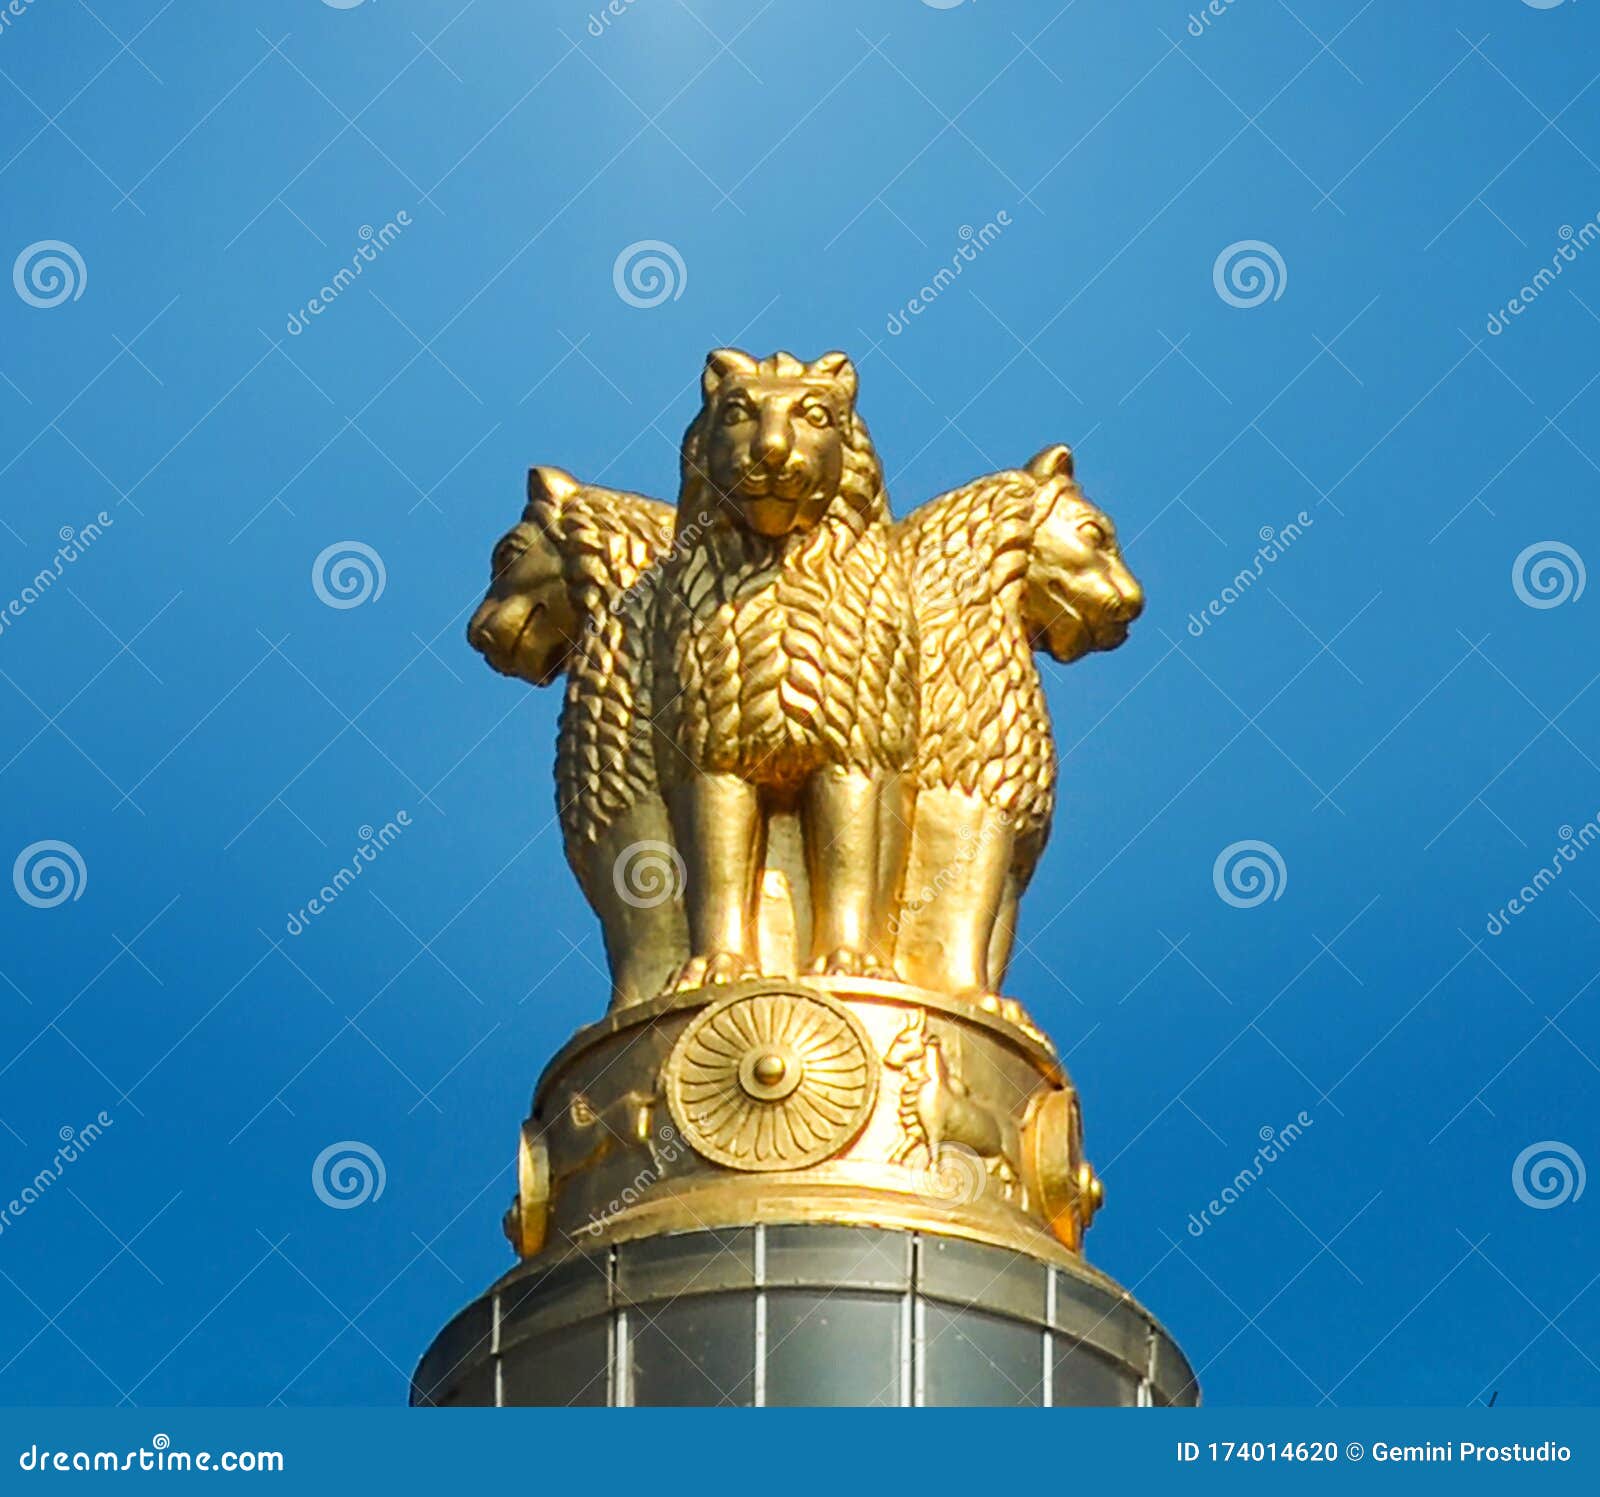 Indian National Emblem & Flag Vidhana Soudh Bangalore Bengaluru Stock Photo  - Image of lion, capital: 174014620